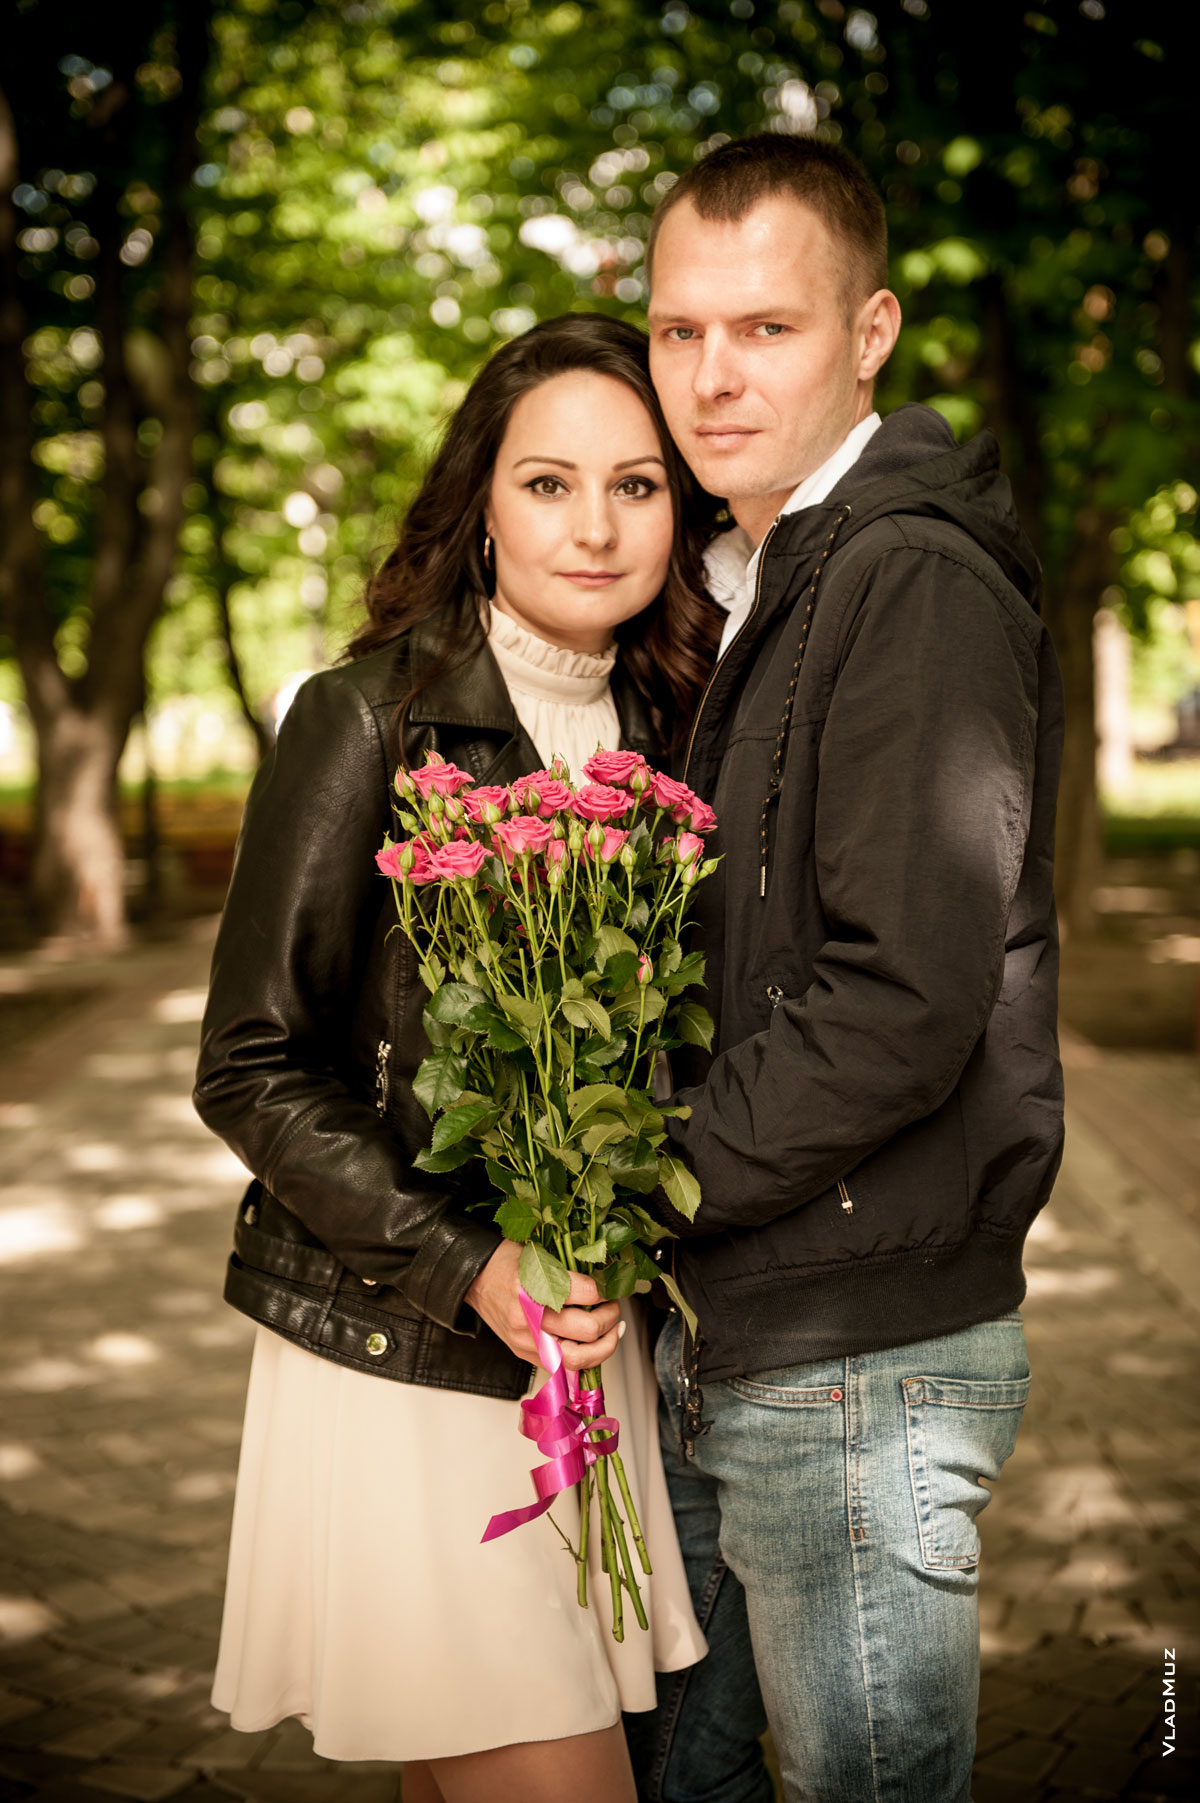 Парный фотопортрет мужчины с девушкой в парке рядом с ЗАГСом г. Железнодорожный в Московской области